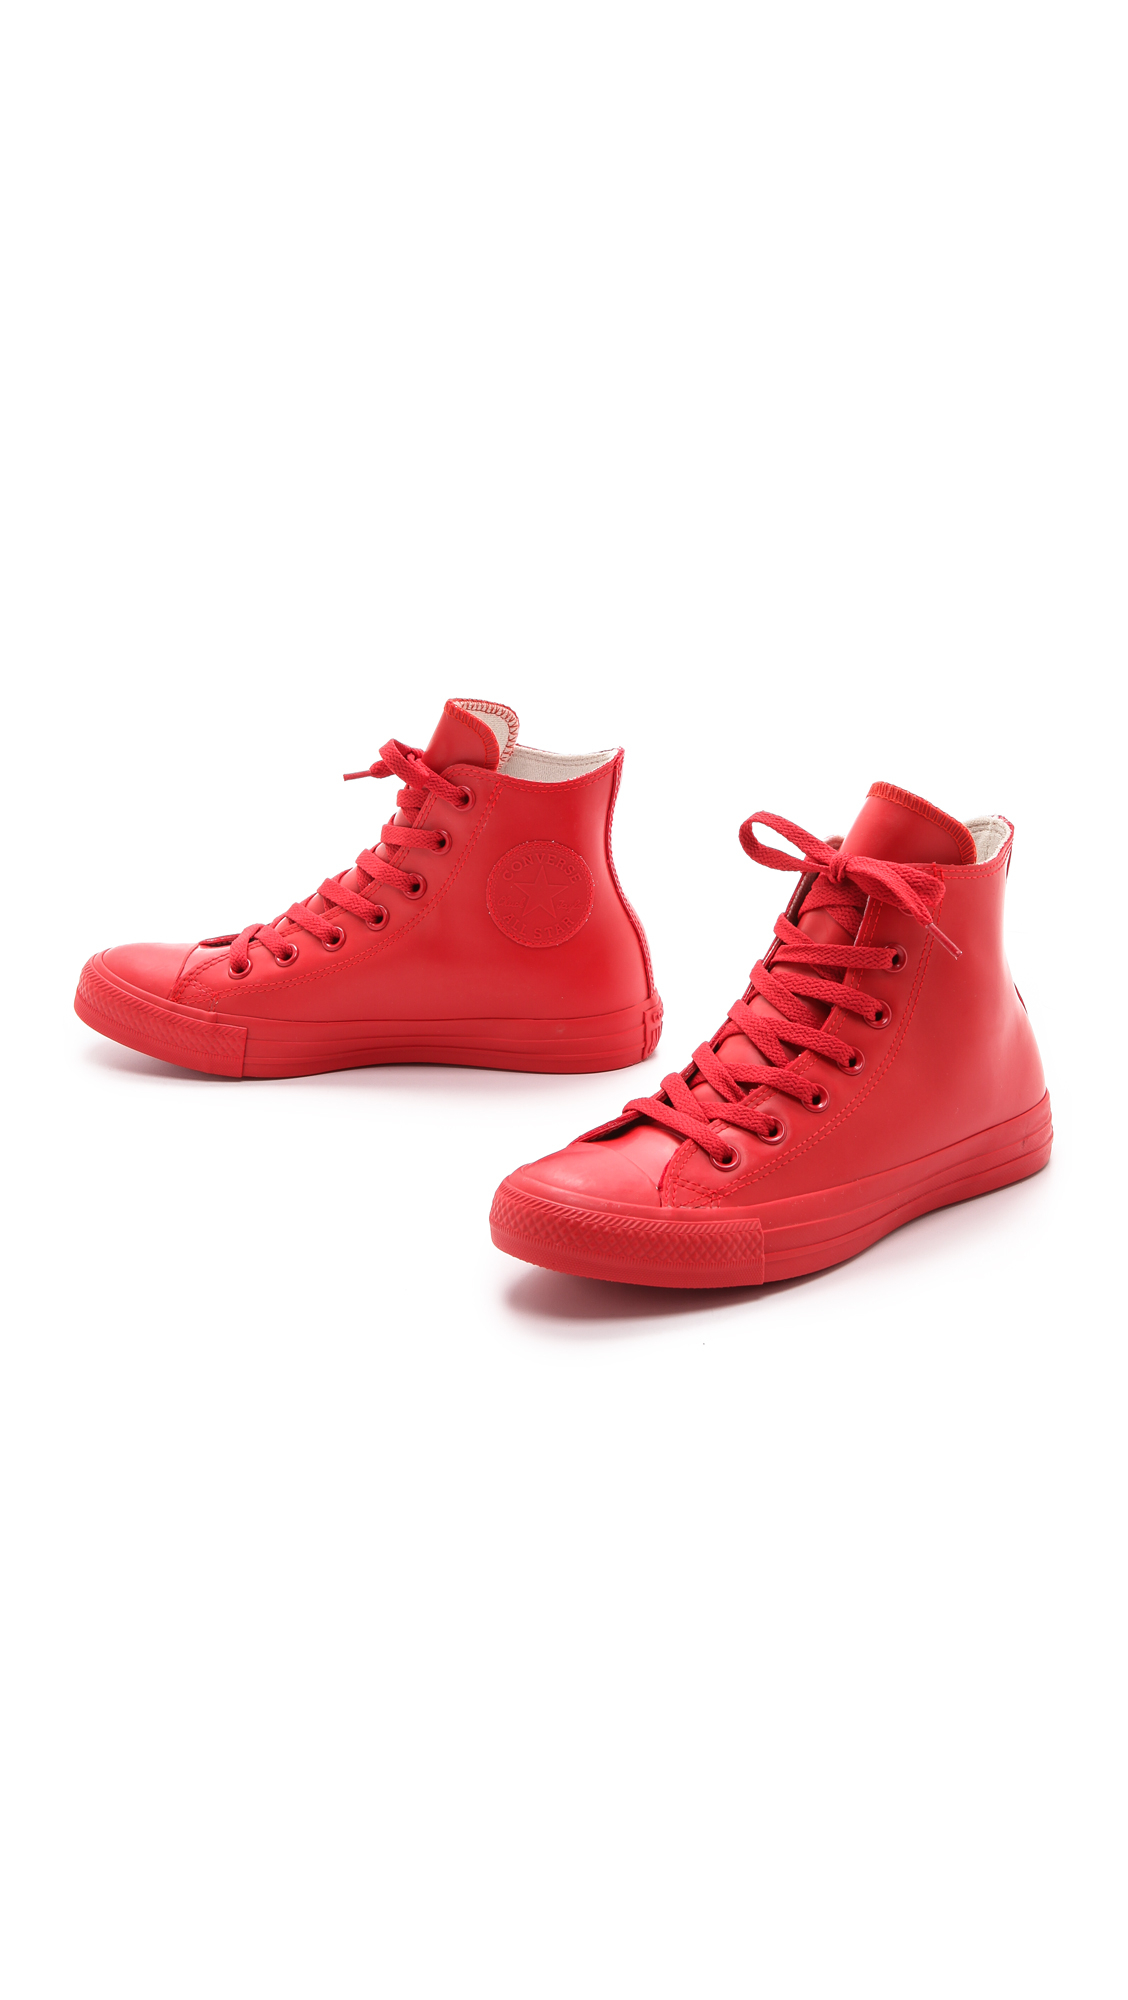 Jet Kan worden genegeerd gijzelaar Converse Rubber Coated Chuck Taylor All Star Sneakers - Red | Lyst